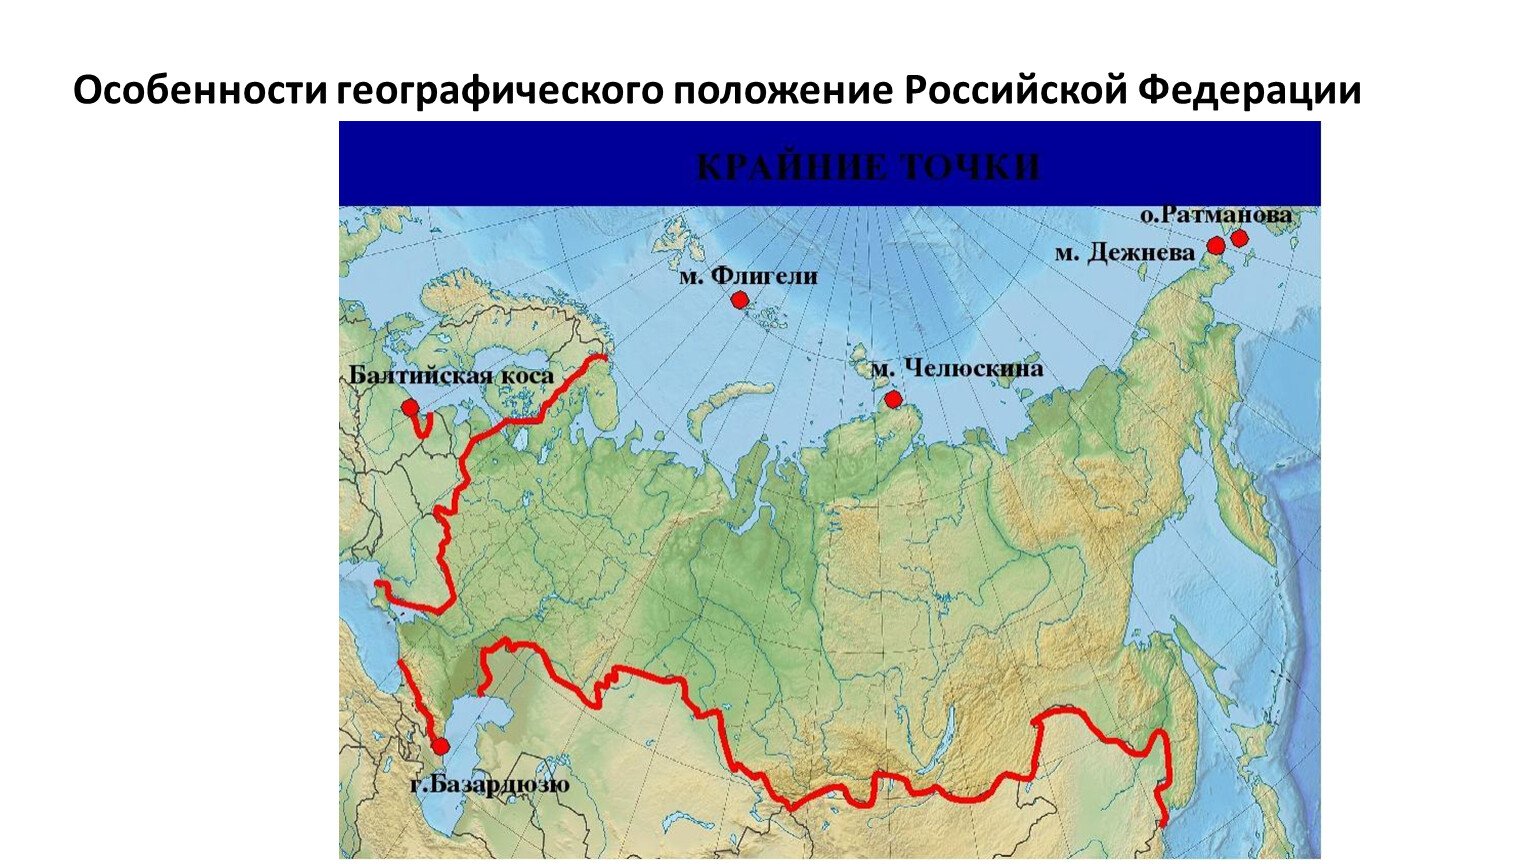 Моря Северного Ледовитого океана омывающие Россию на карте. Моря бассейна Северного Ледовитого океана омывающие Россию. Моря бассейна Северного Ледовитого океана в России на карте. Моря омывающие Россию на карте. Четыре океана омывают